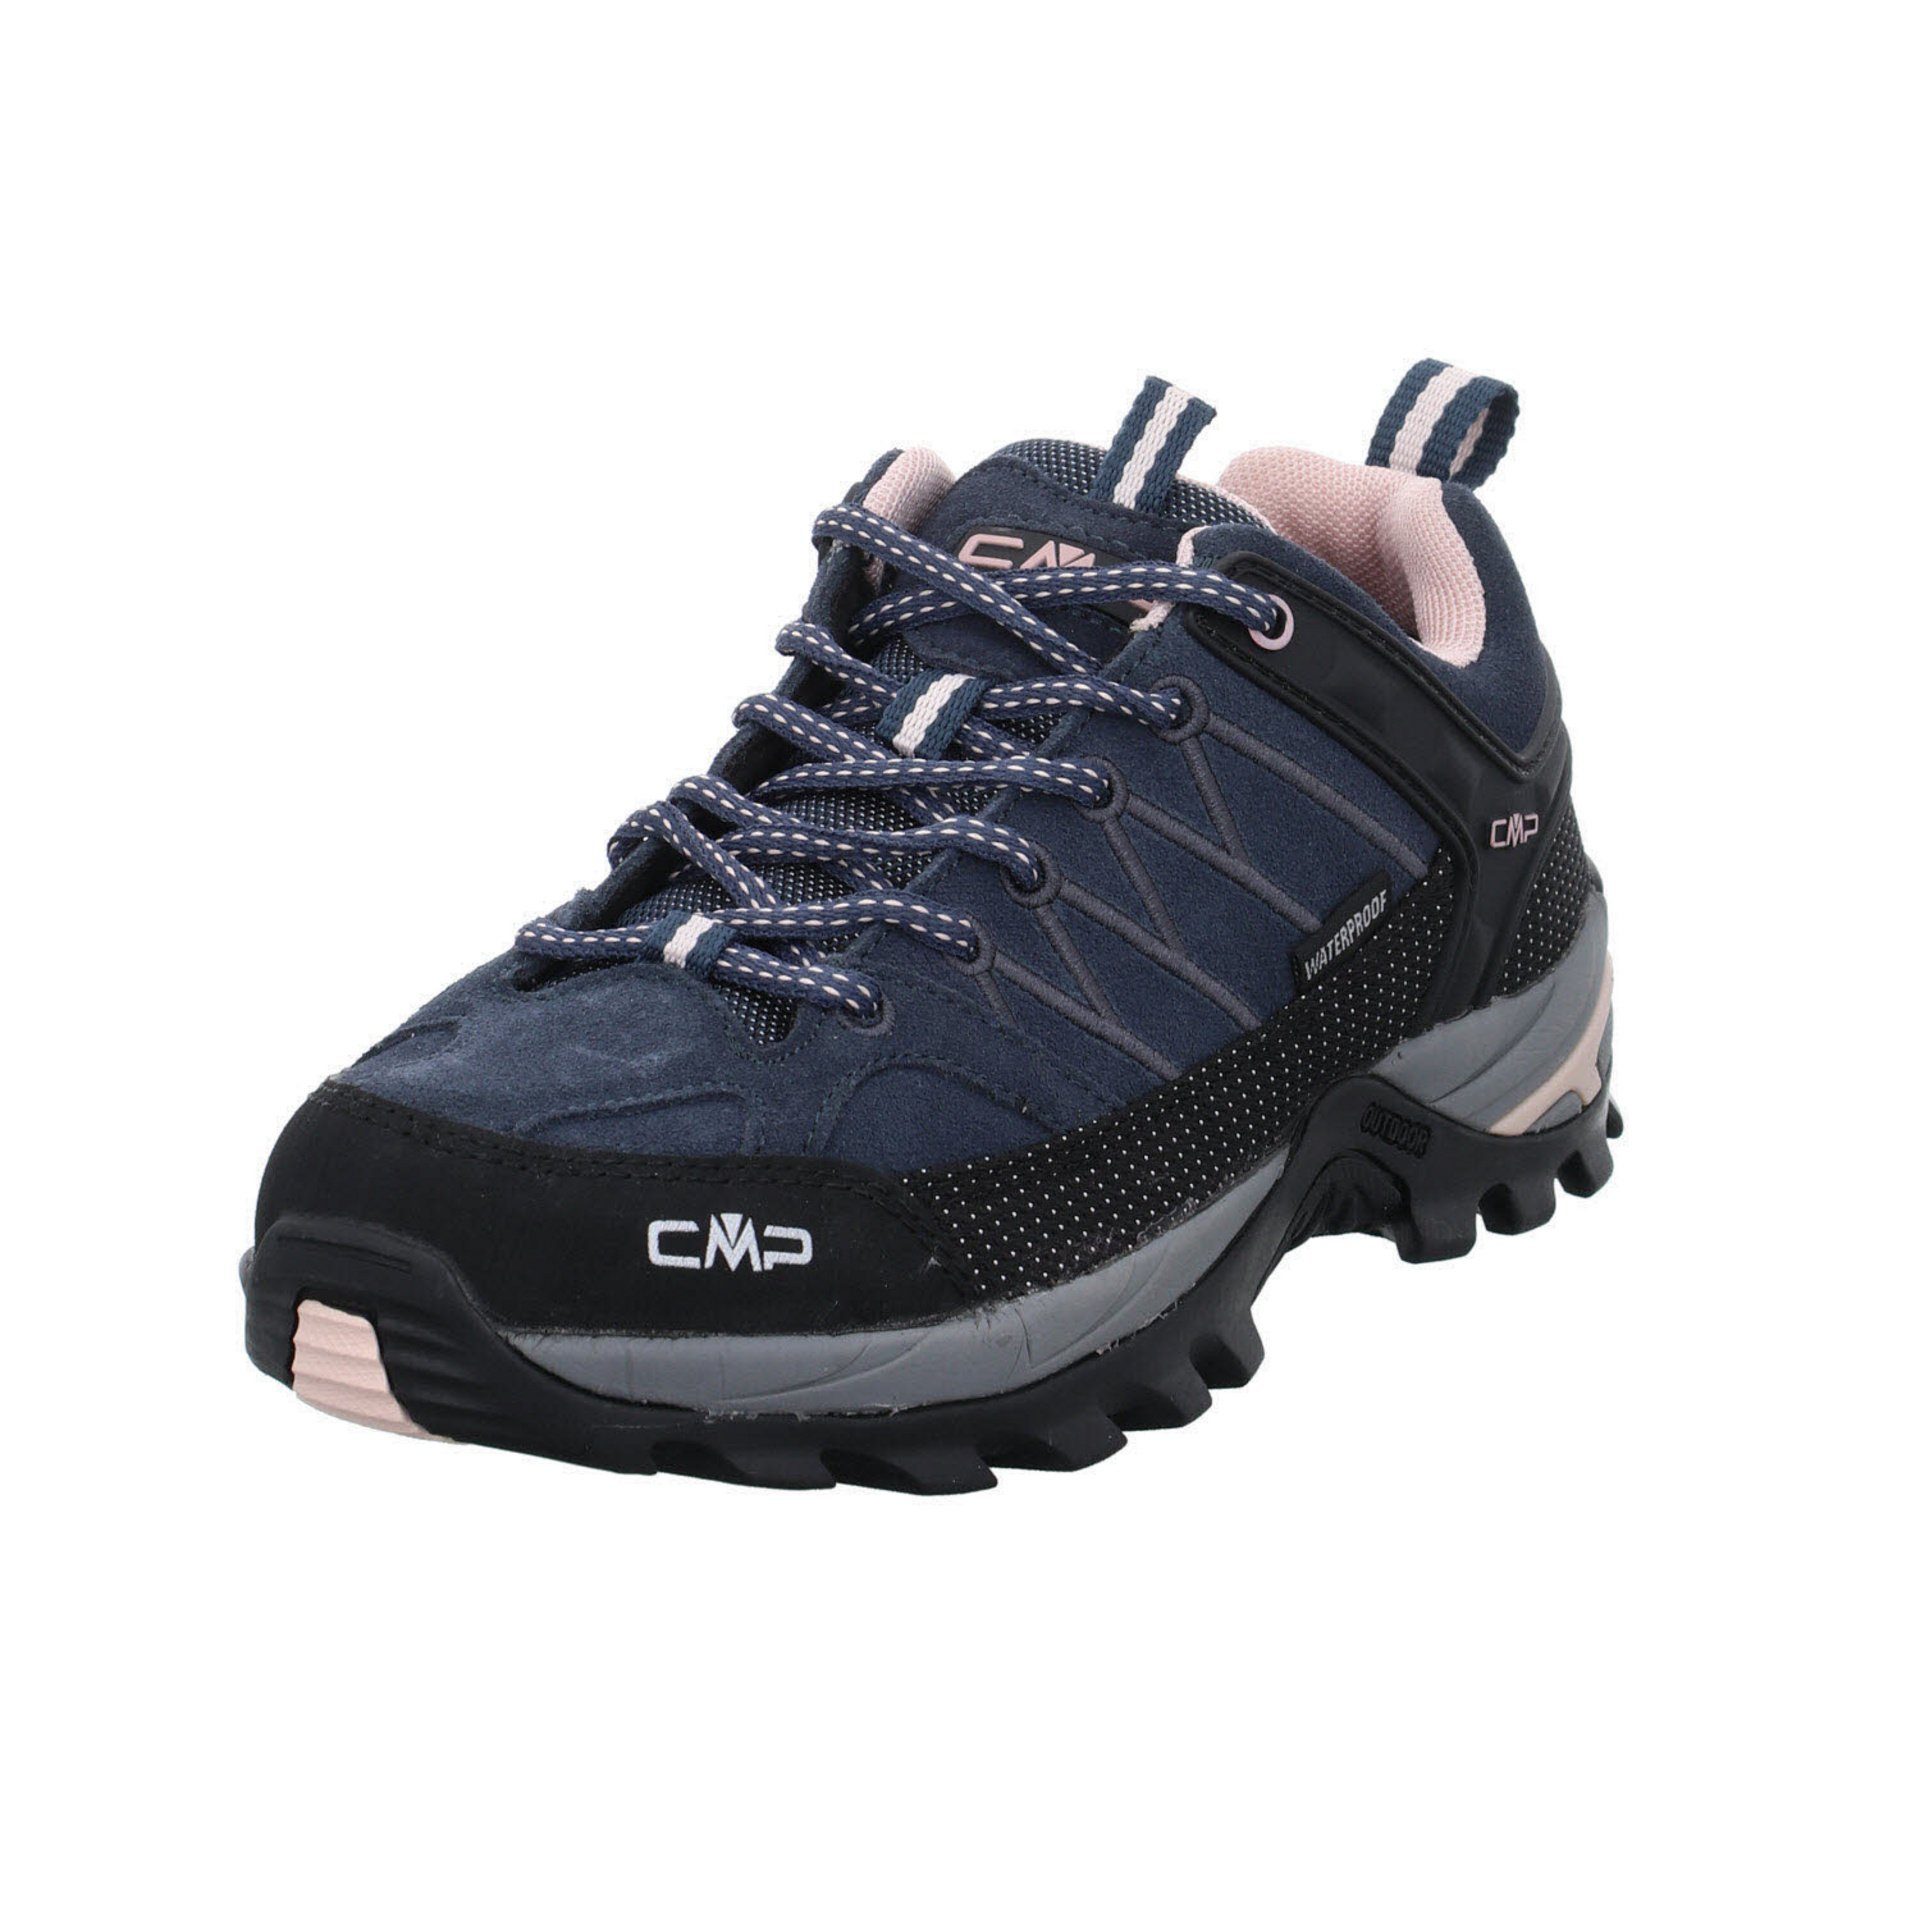 CMP Damen Schuhe Outdoor Riegel Low Outdoorschuh Outdoorschuh Leder-/Textilkombination 53UG ASPHALT-ANTRACITE-ROSE